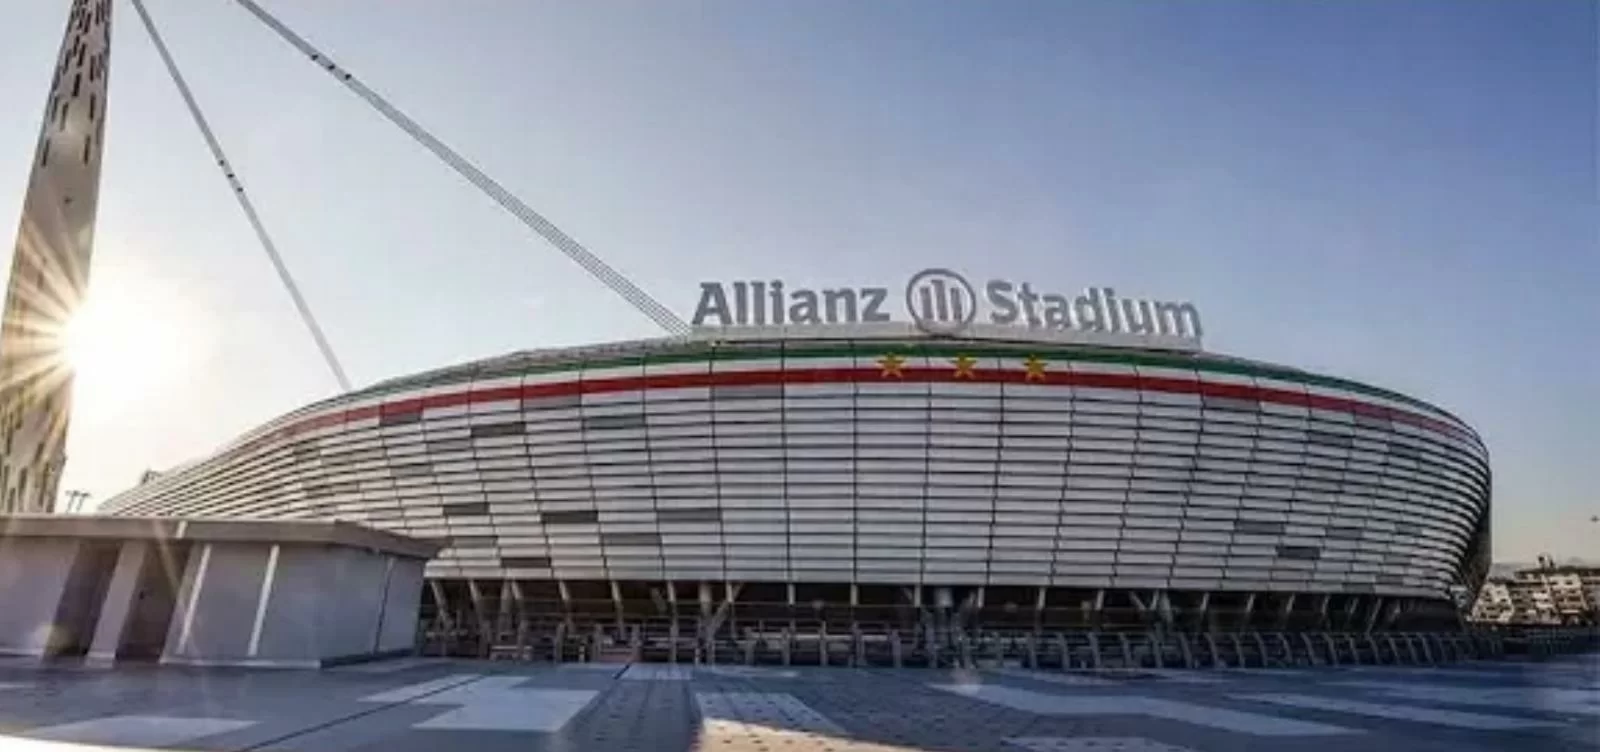 Biglietti stadio: l’Antitrust apre un procedimento contro 9 club di Serie A inclusa la Juventus